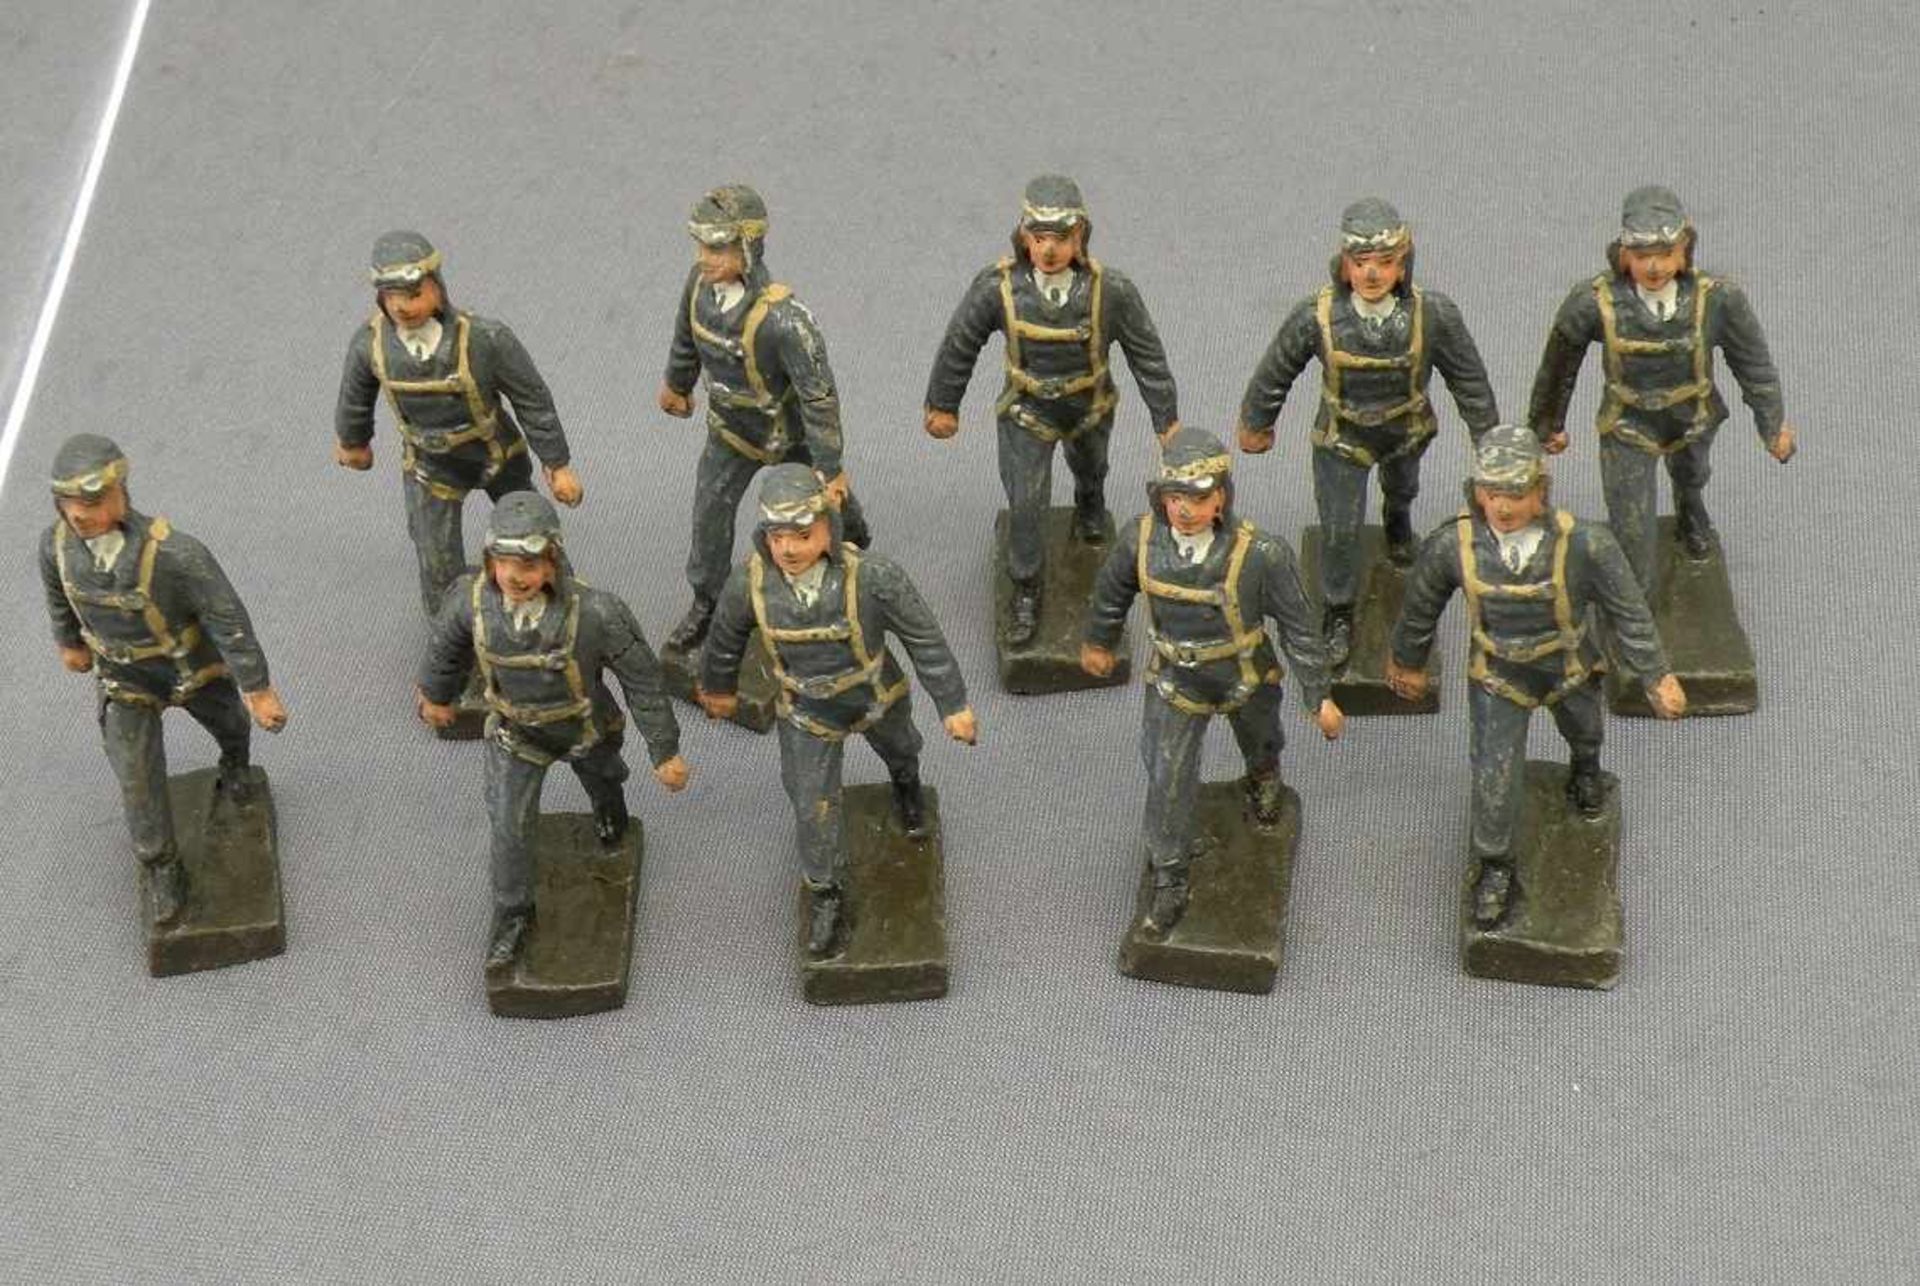 10 Leylafiguren Luftwaffe, 2. WK, 7 cm hoch